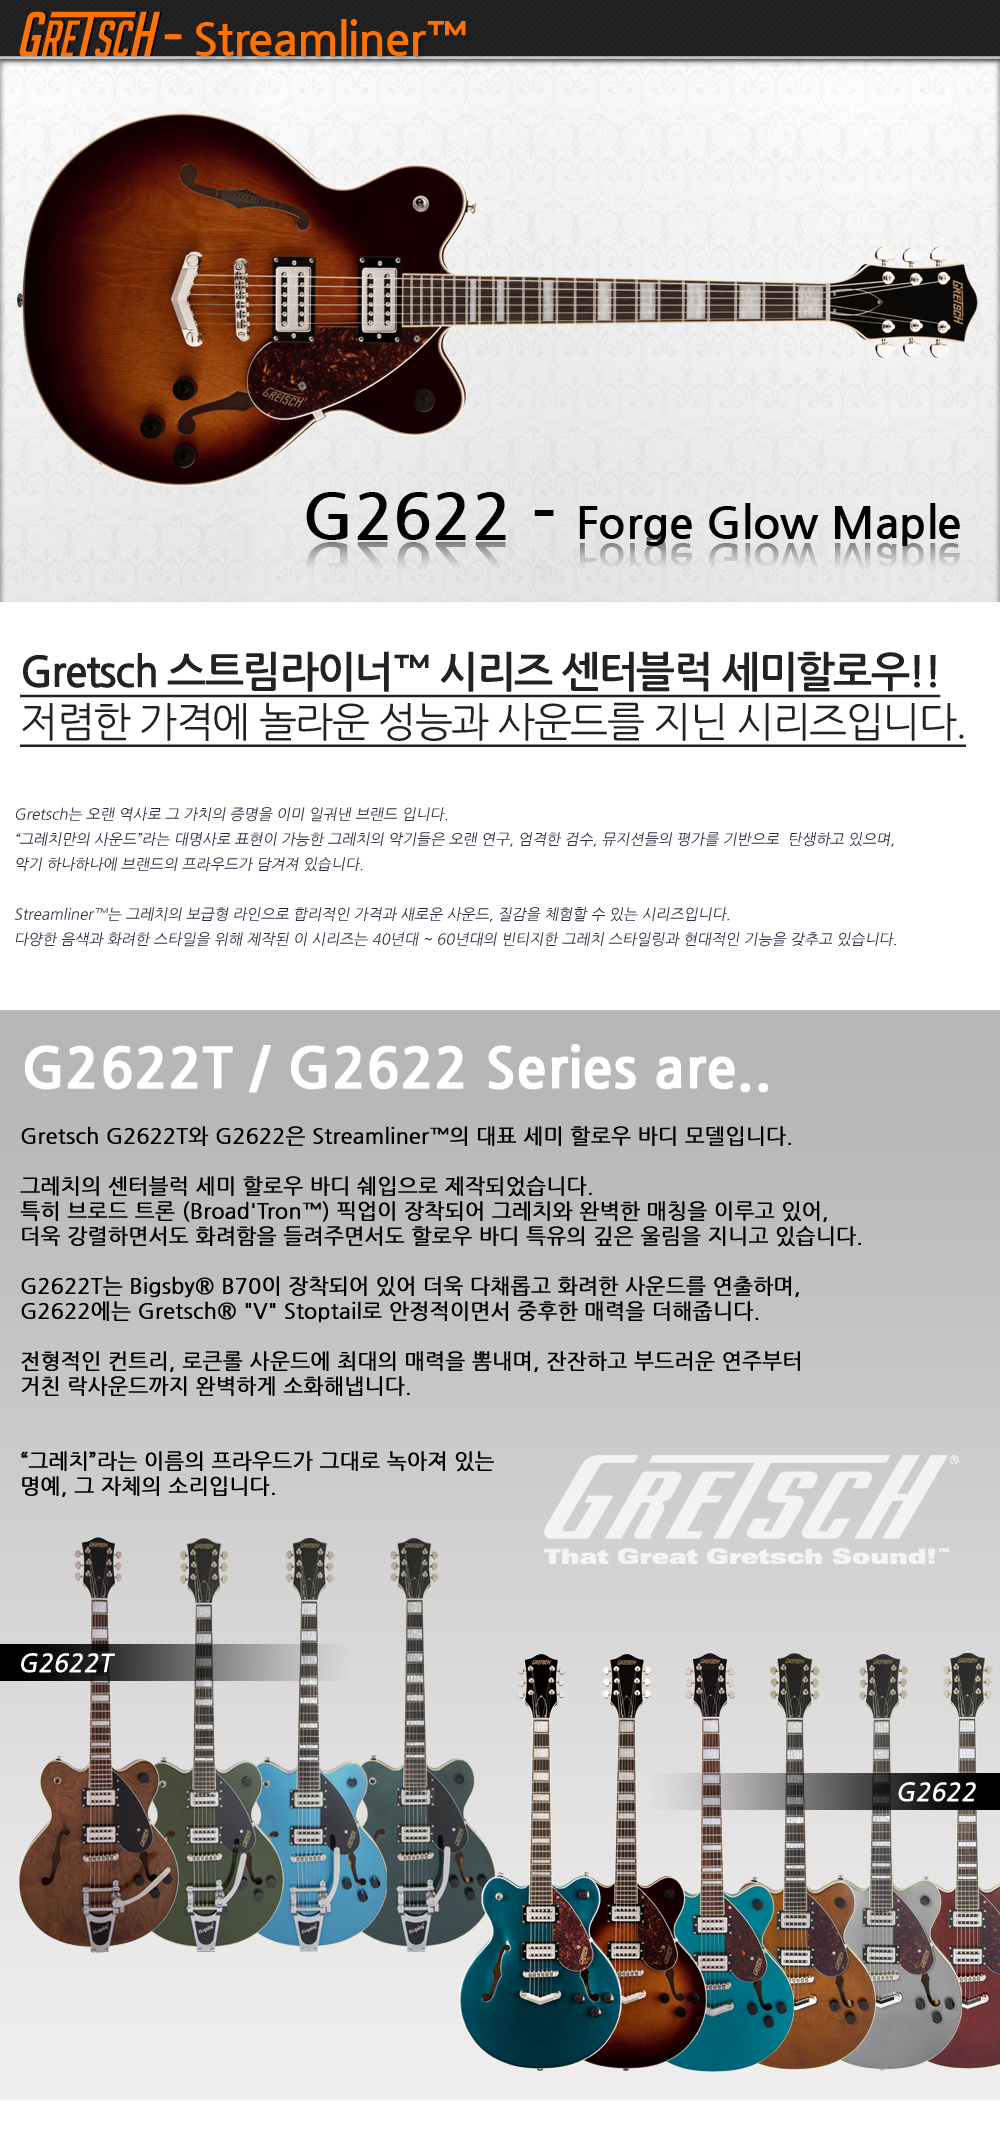 Gretsch-G2622-ForgeGlowMaple_1_170600.jpg